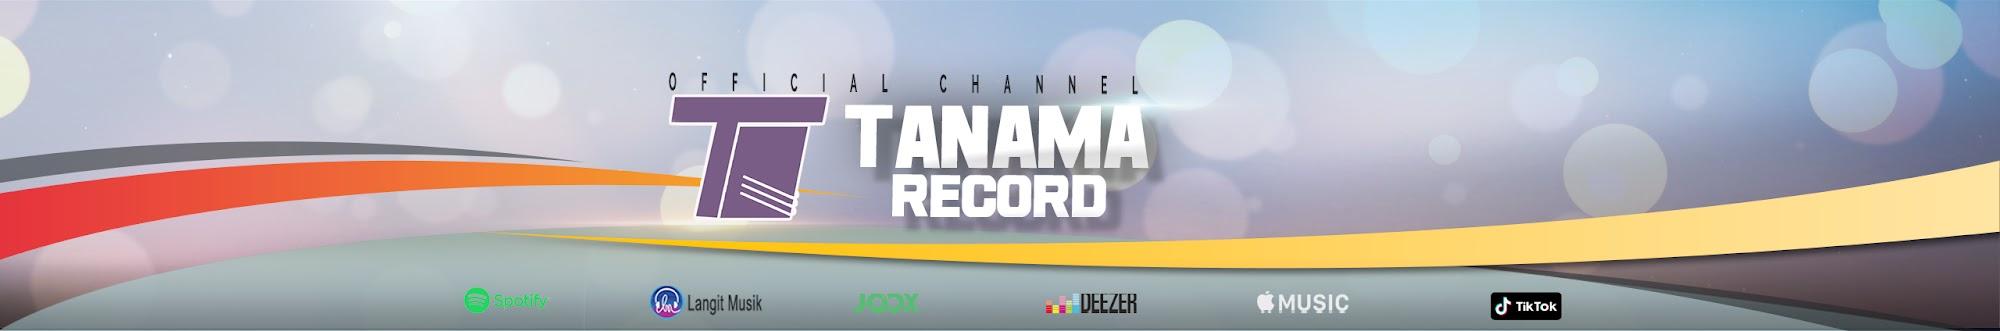 Tanama Record